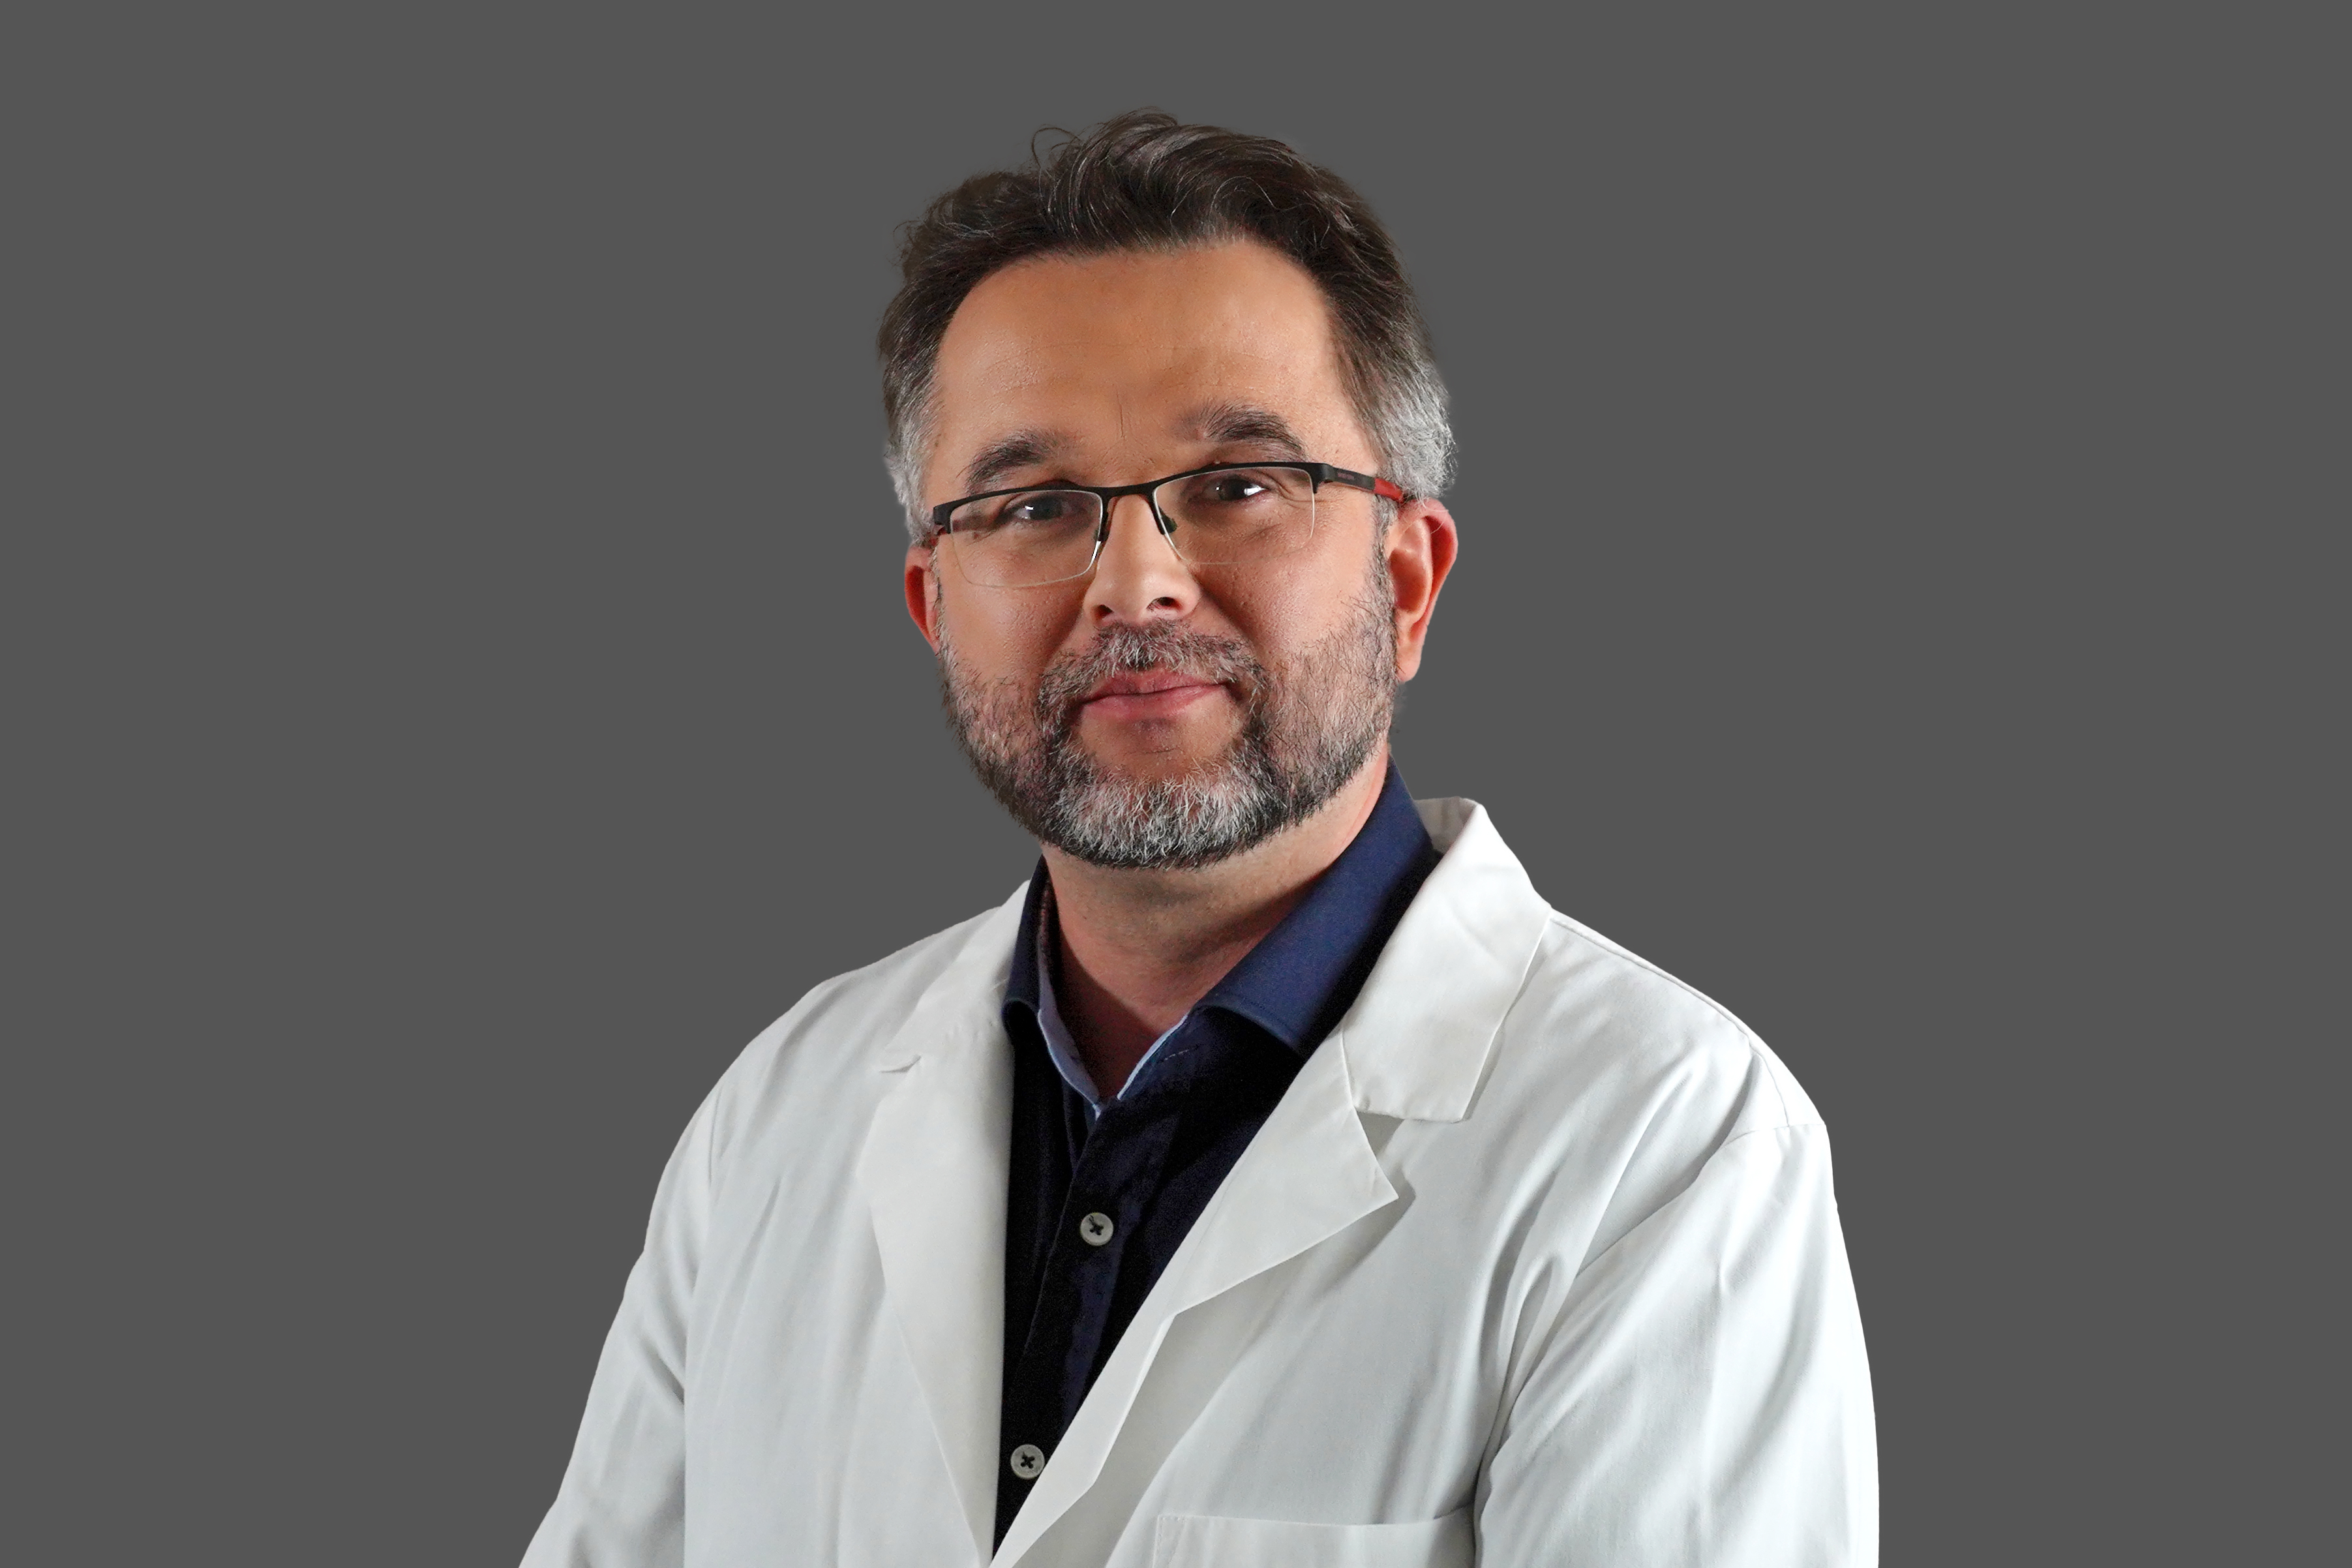 A leghatékonyabb megoldás túlsúly ellen – Interjú Prof. Dr. Juhász Árpád PhD bariátriai sebésszel